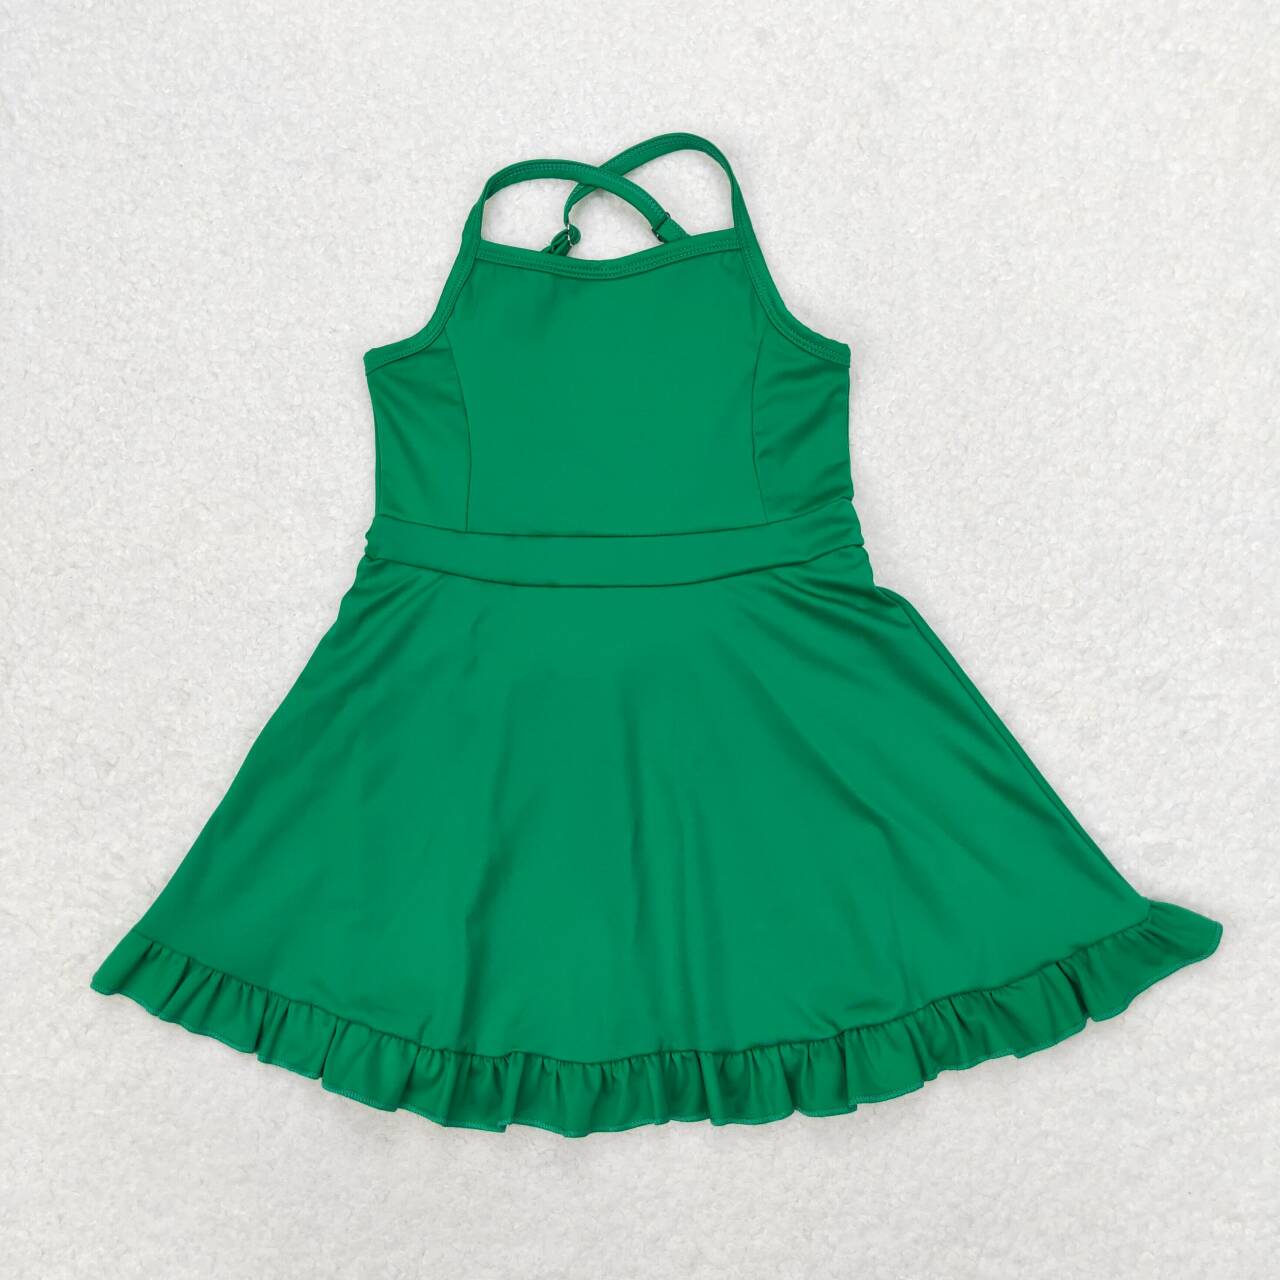 S0444 Solid Green Sportswear Skirt Swimsuit